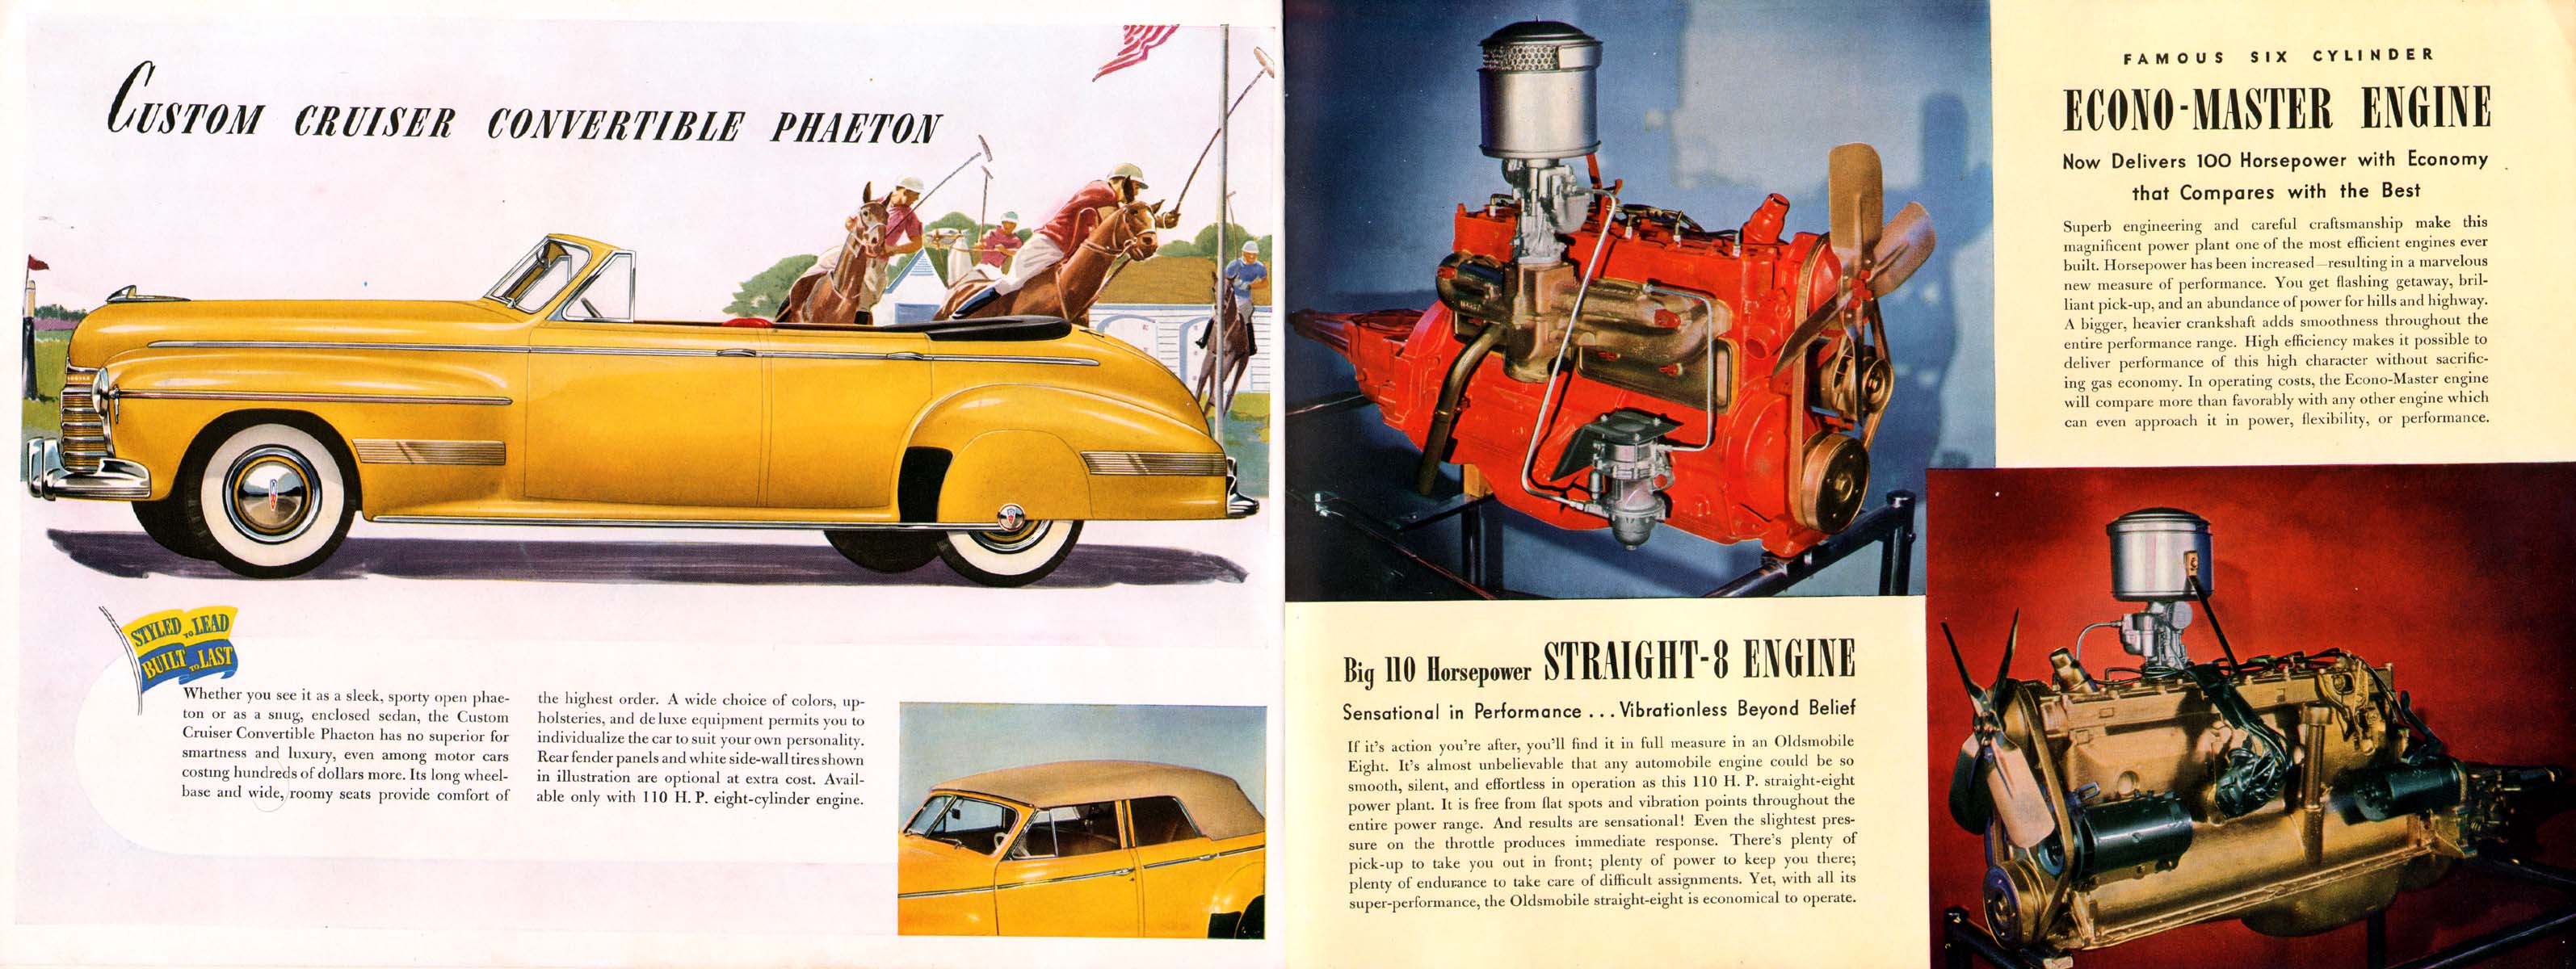 1941_Oldsmobile_Prestige-20-21